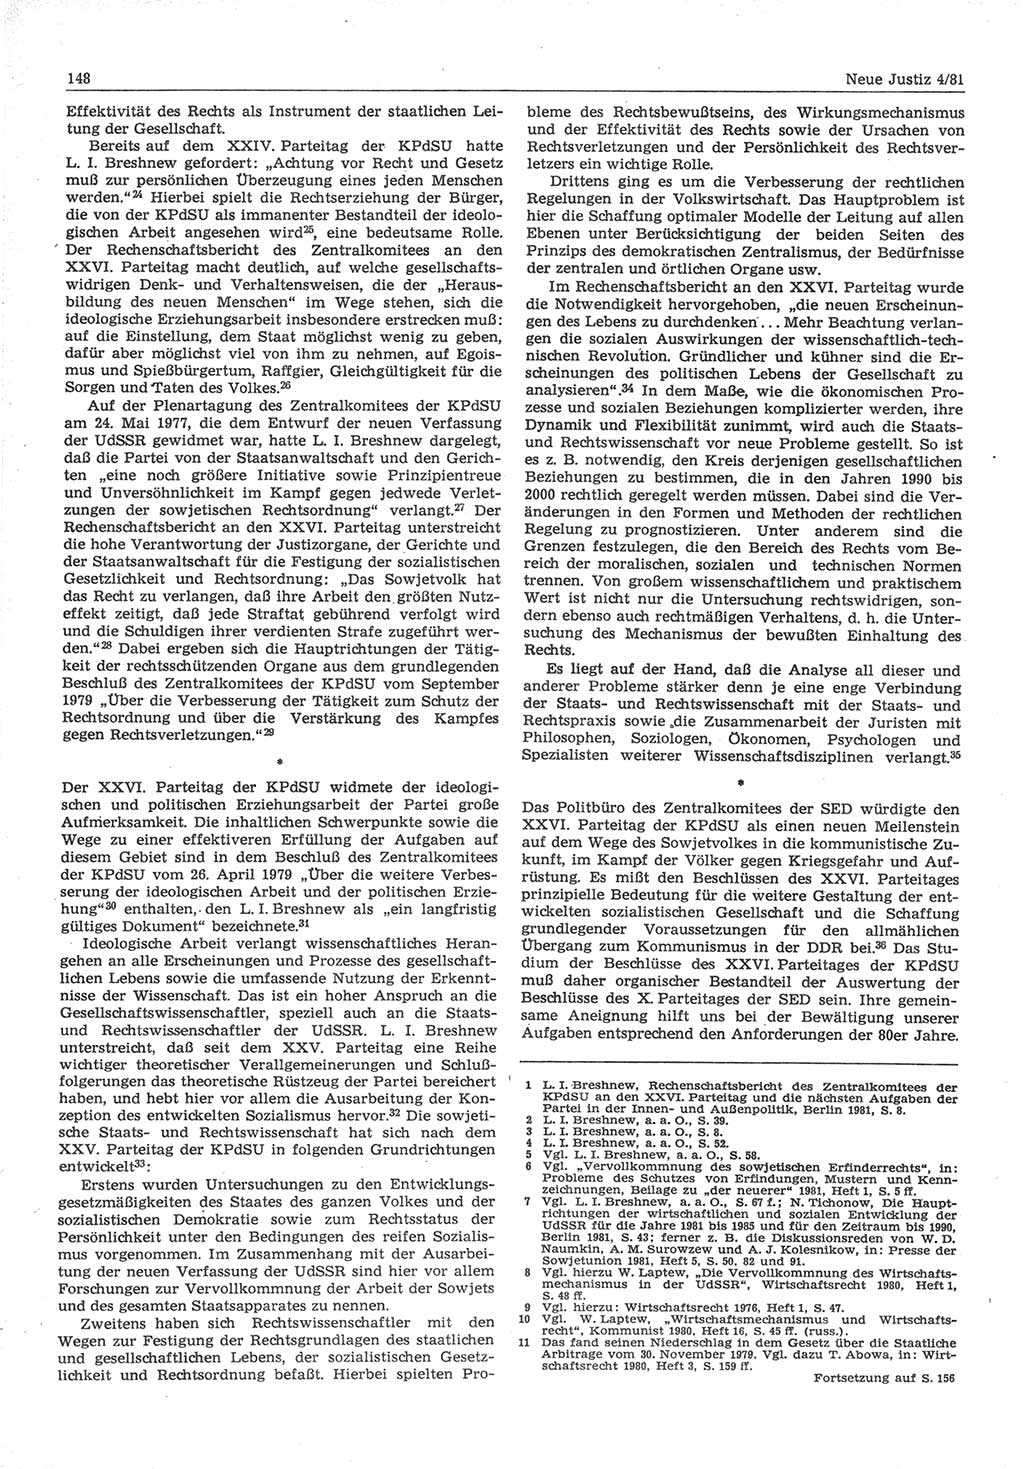 Neue Justiz (NJ), Zeitschrift für sozialistisches Recht und Gesetzlichkeit [Deutsche Demokratische Republik (DDR)], 35. Jahrgang 1981, Seite 148 (NJ DDR 1981, S. 148)